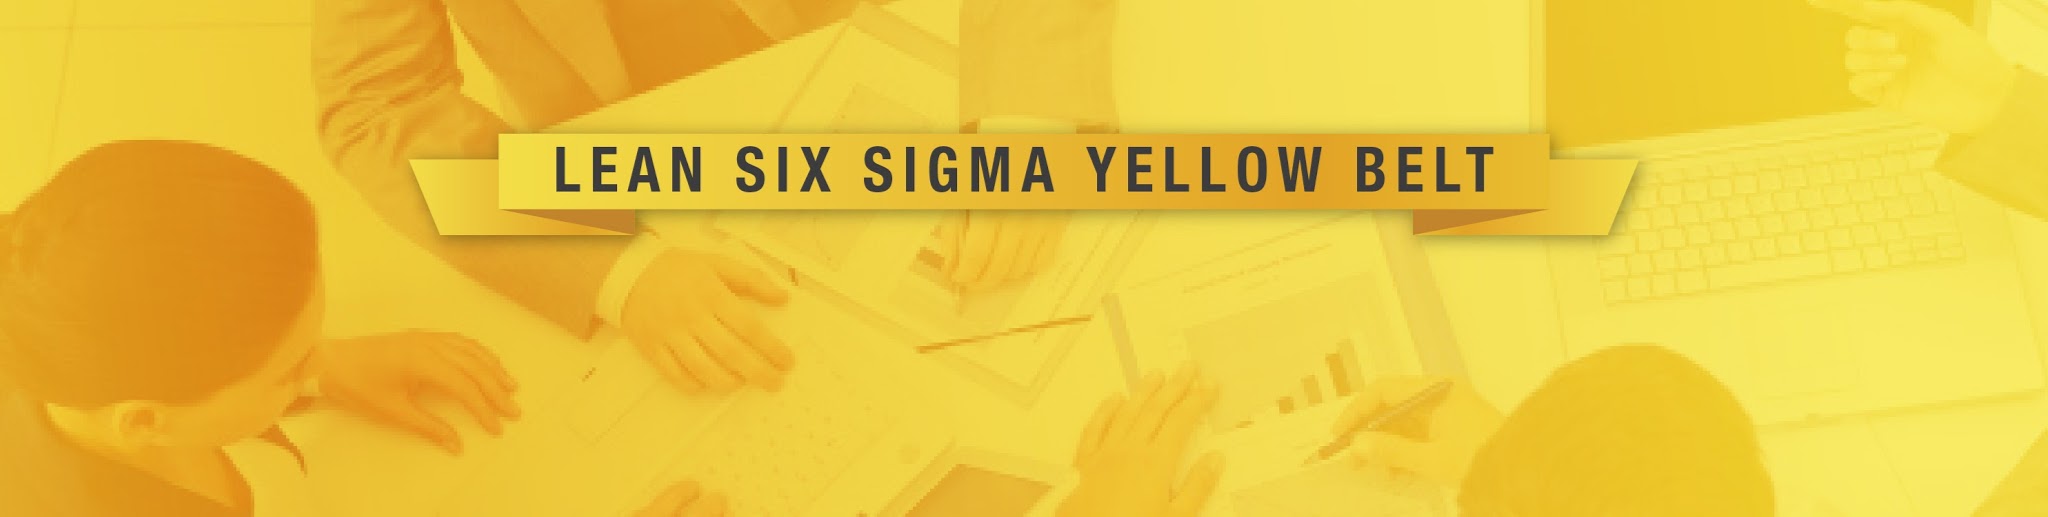 LSS Iowa - Lean Six Sigma Yellow Belt